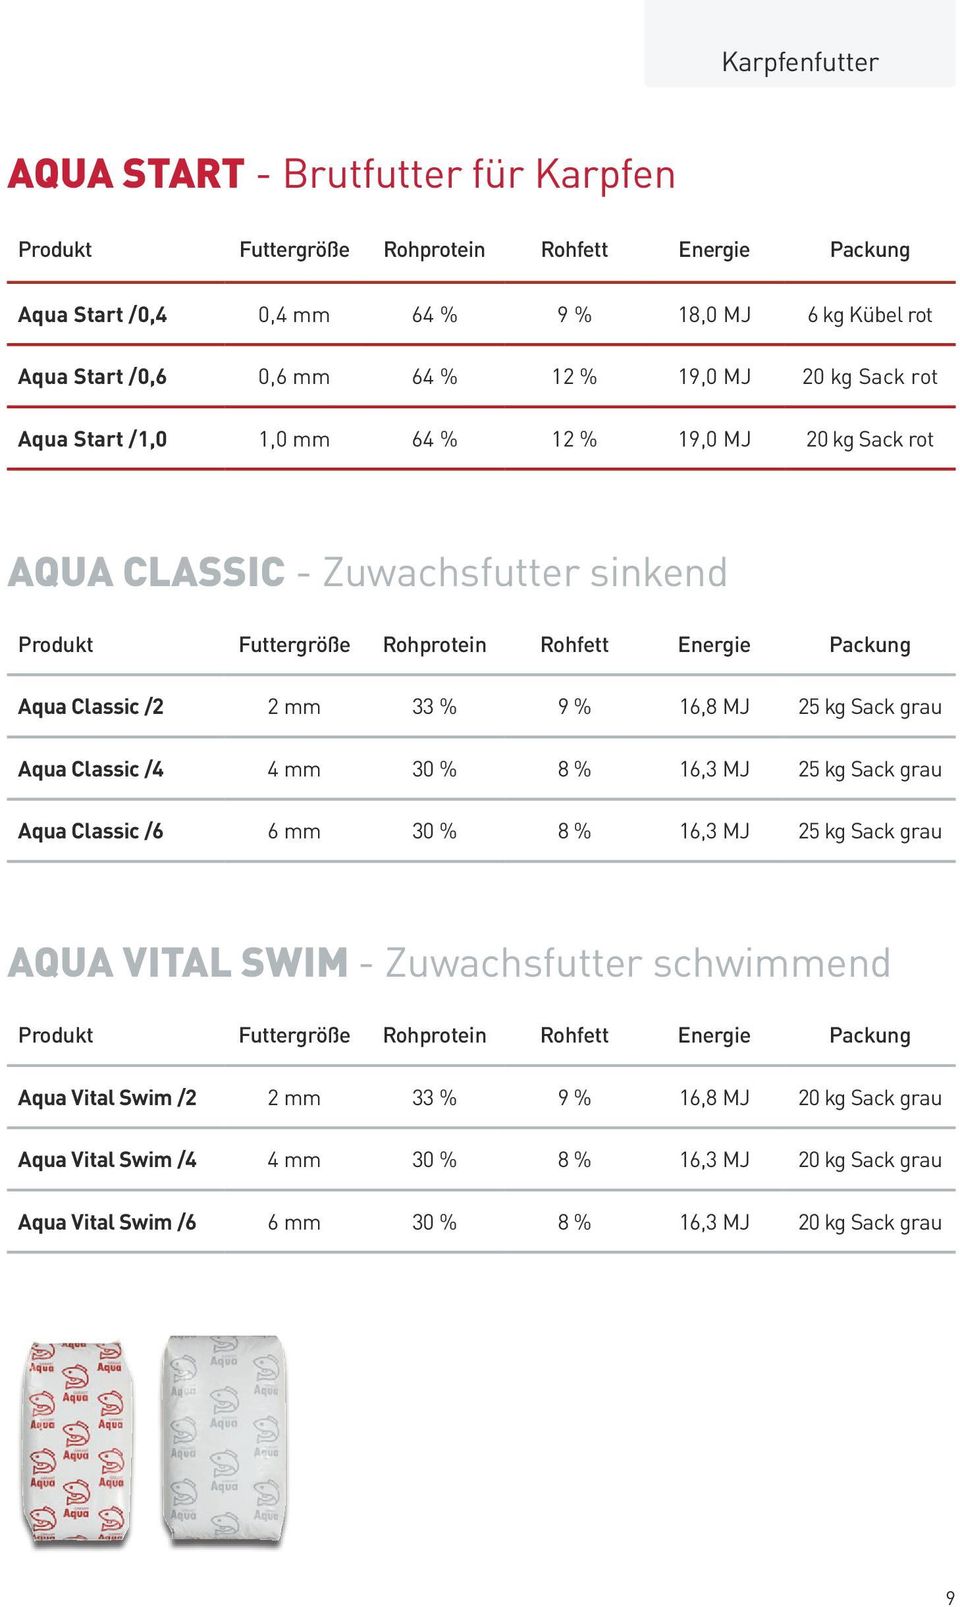 Classic /4 4 mm 30 % 8 % 16,3 MJ 25 kg Sack grau Aqua Classic /6 6 mm 30 % 8 % 16,3 MJ 25 kg Sack grau AQUA VITAL SWIM - Zuwachsfutter schwimmend Aqua Vital